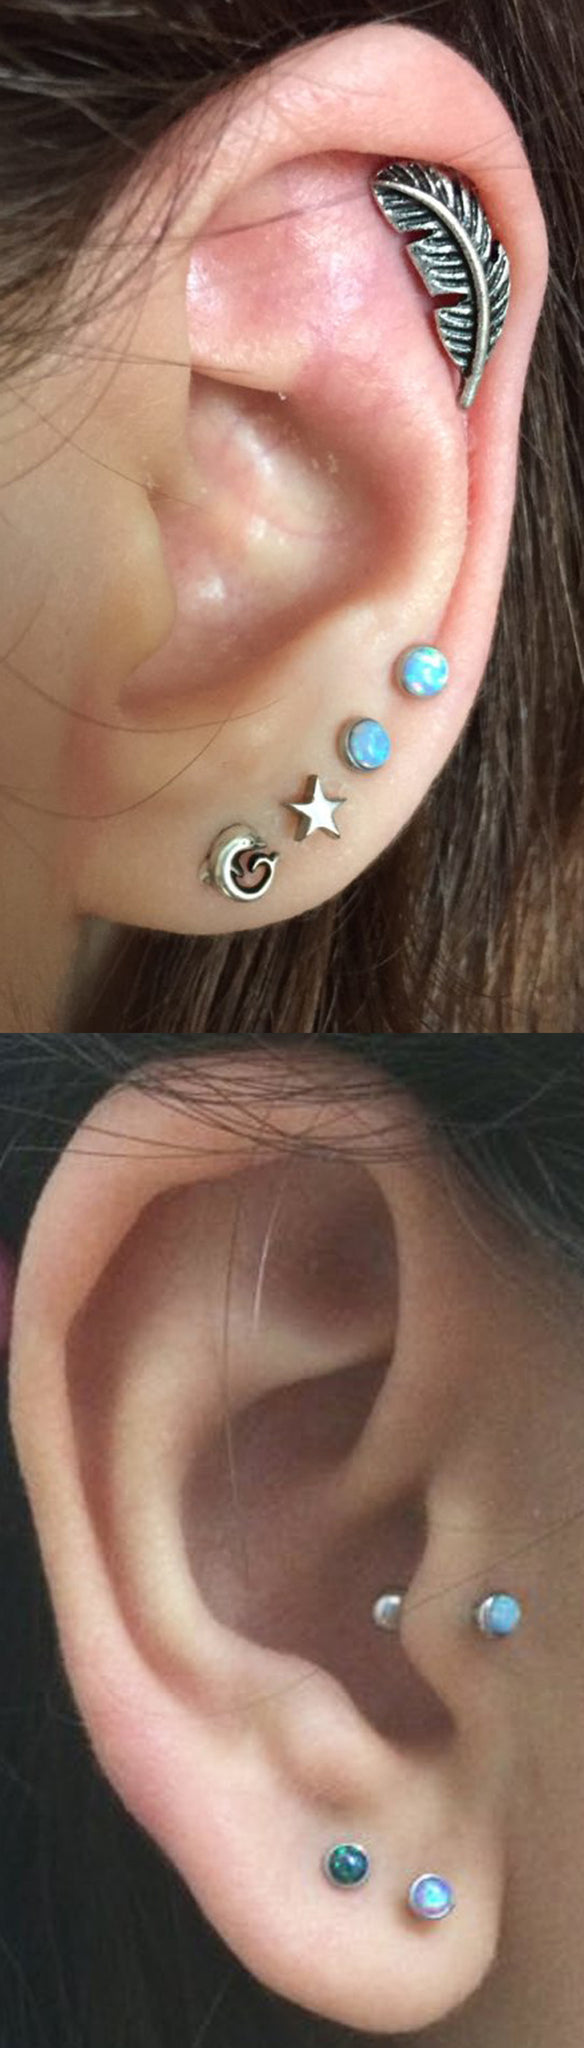 Celebrity Boho Ear Piercing Ideas MyBodiArt.com - Silver Antiqued Leaf Cartilage Earring - Double Triple Opal Studs 